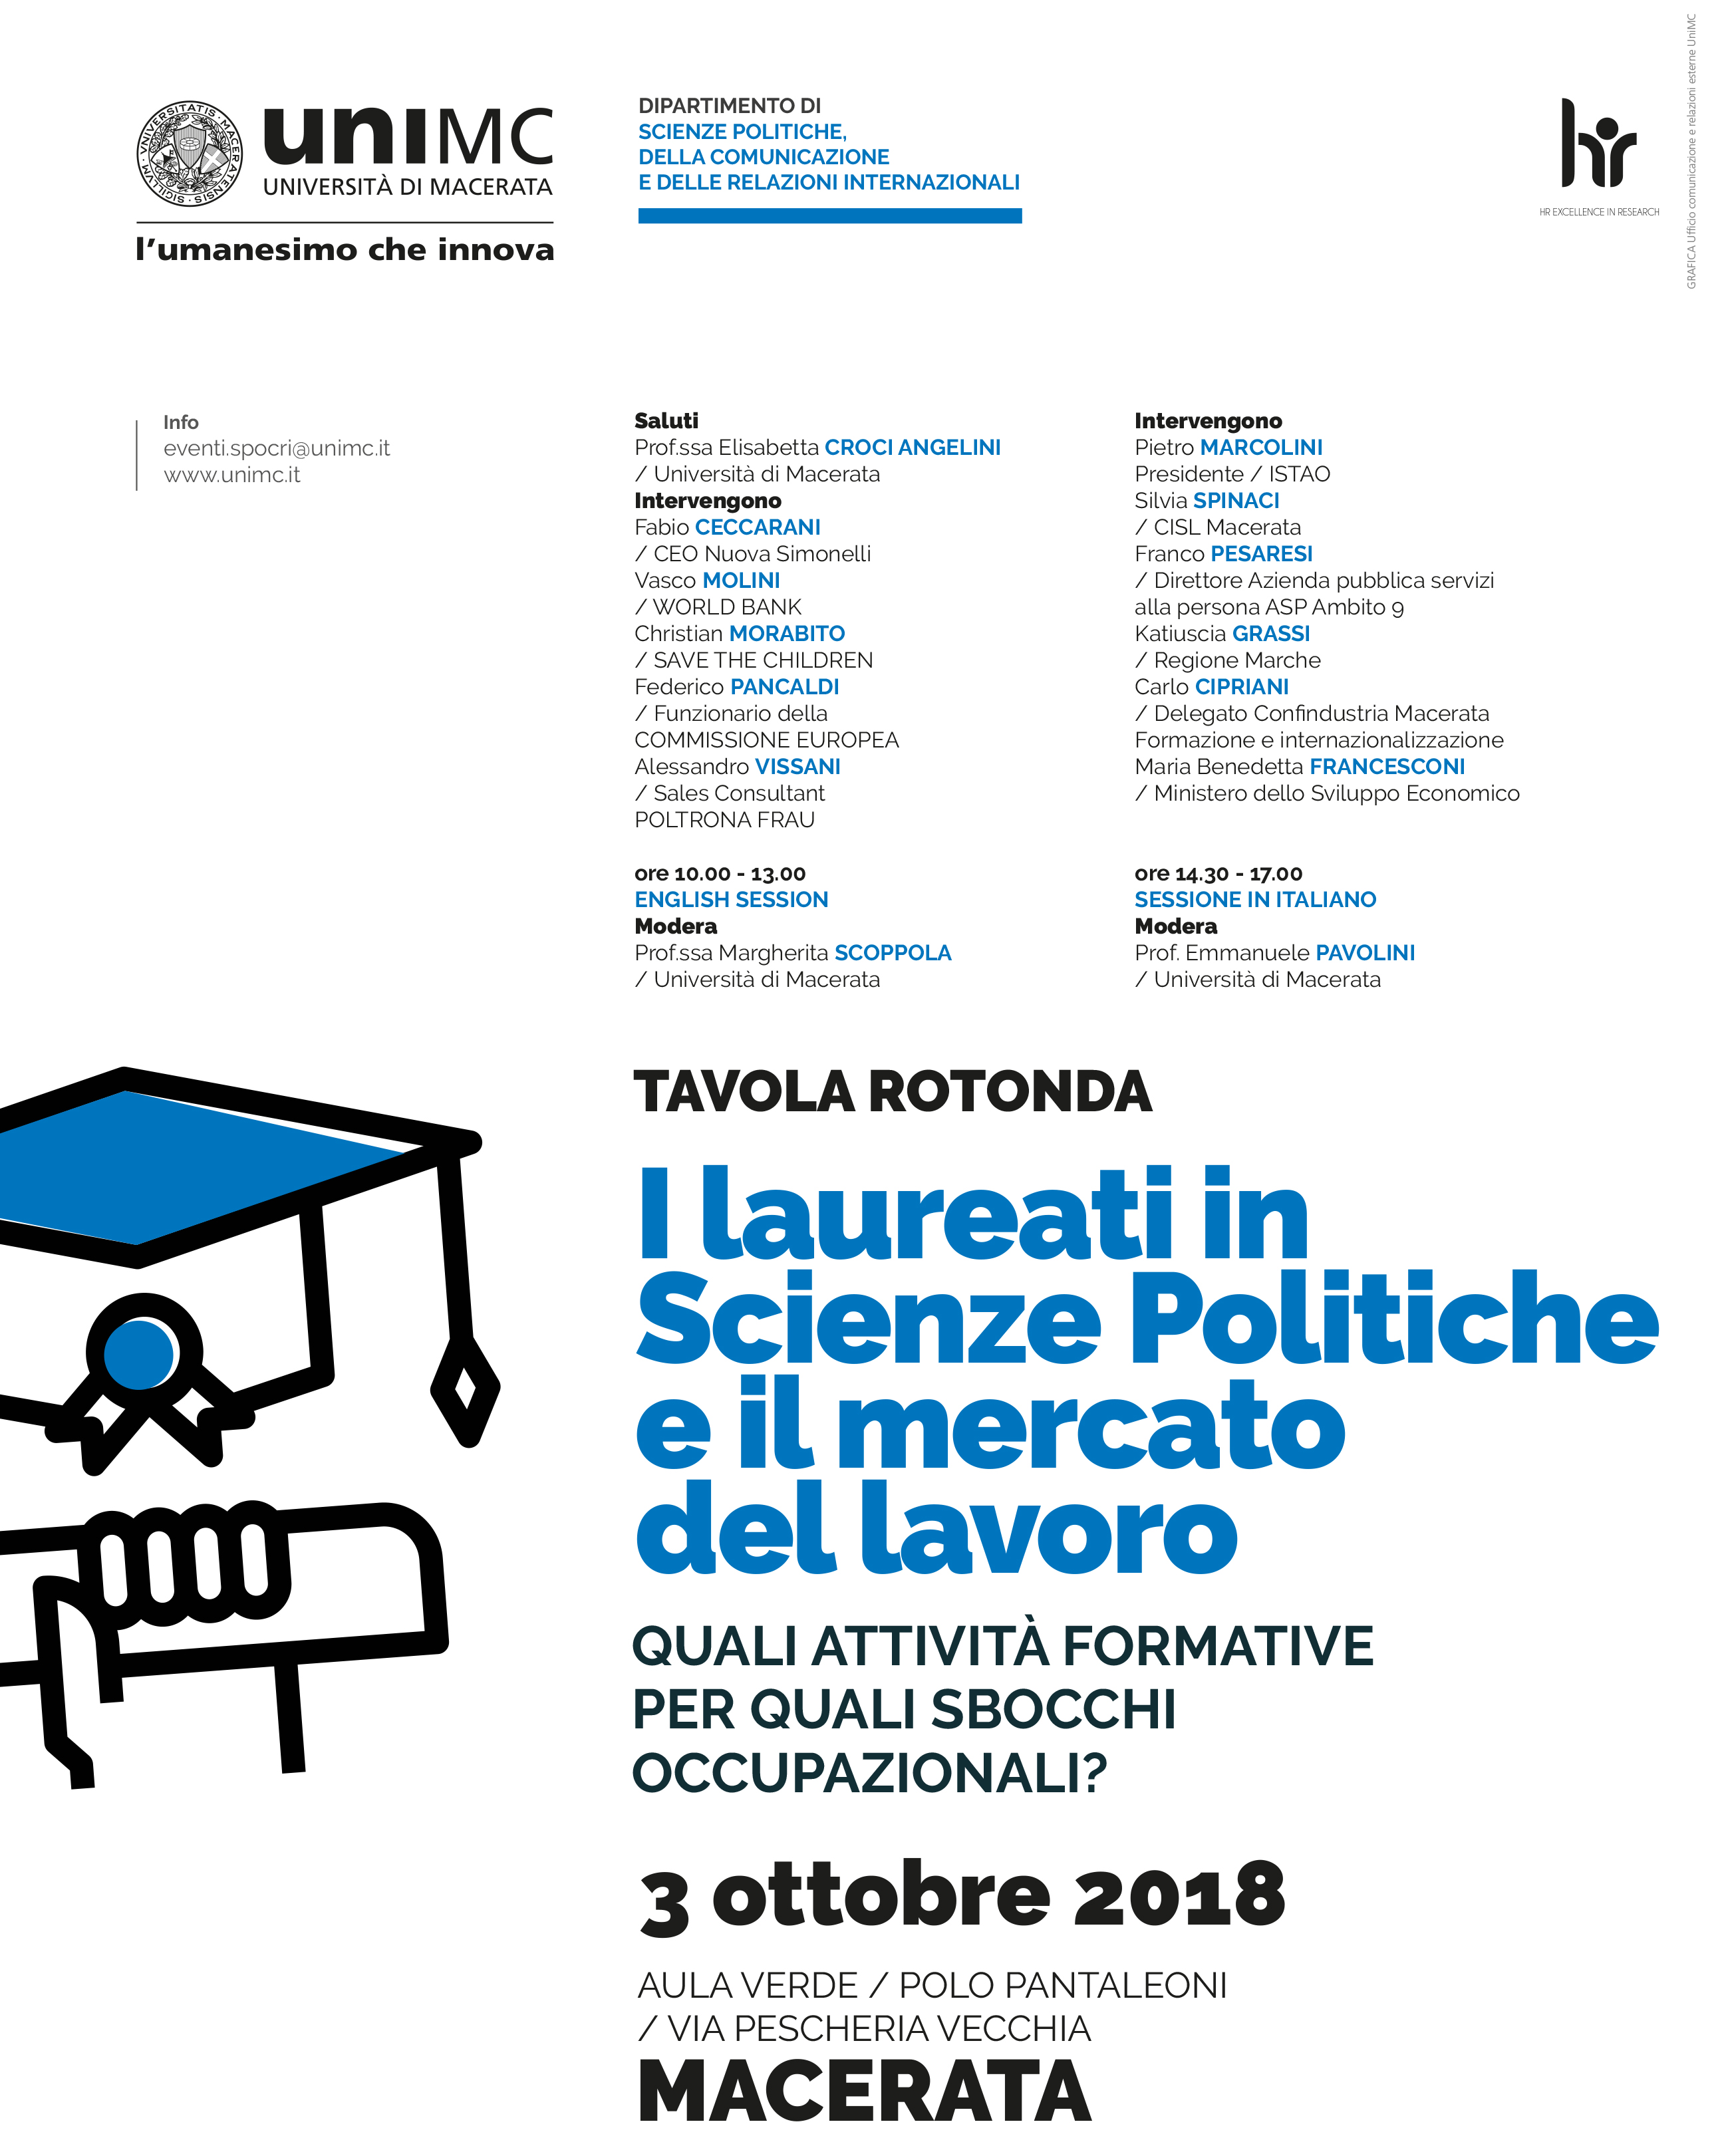 Panel discussion | I laureati in Scienze Politiche ed il mercato del lavoro